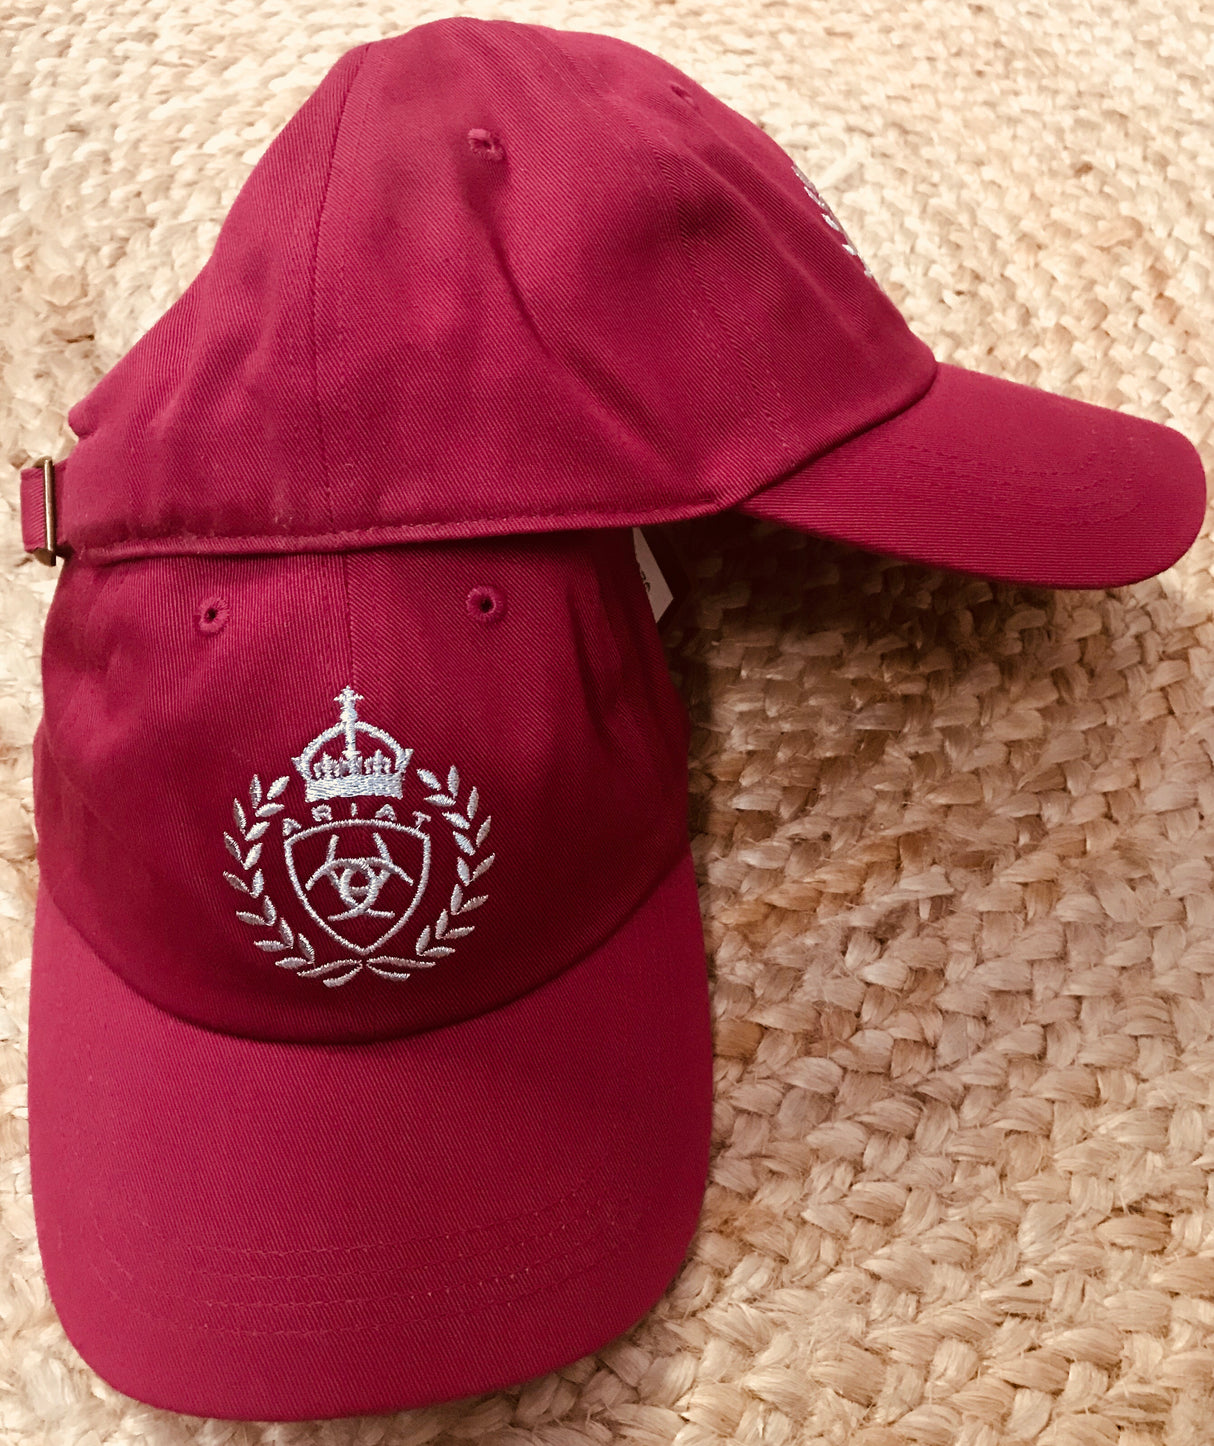 Ariat Ladies crest logo cap